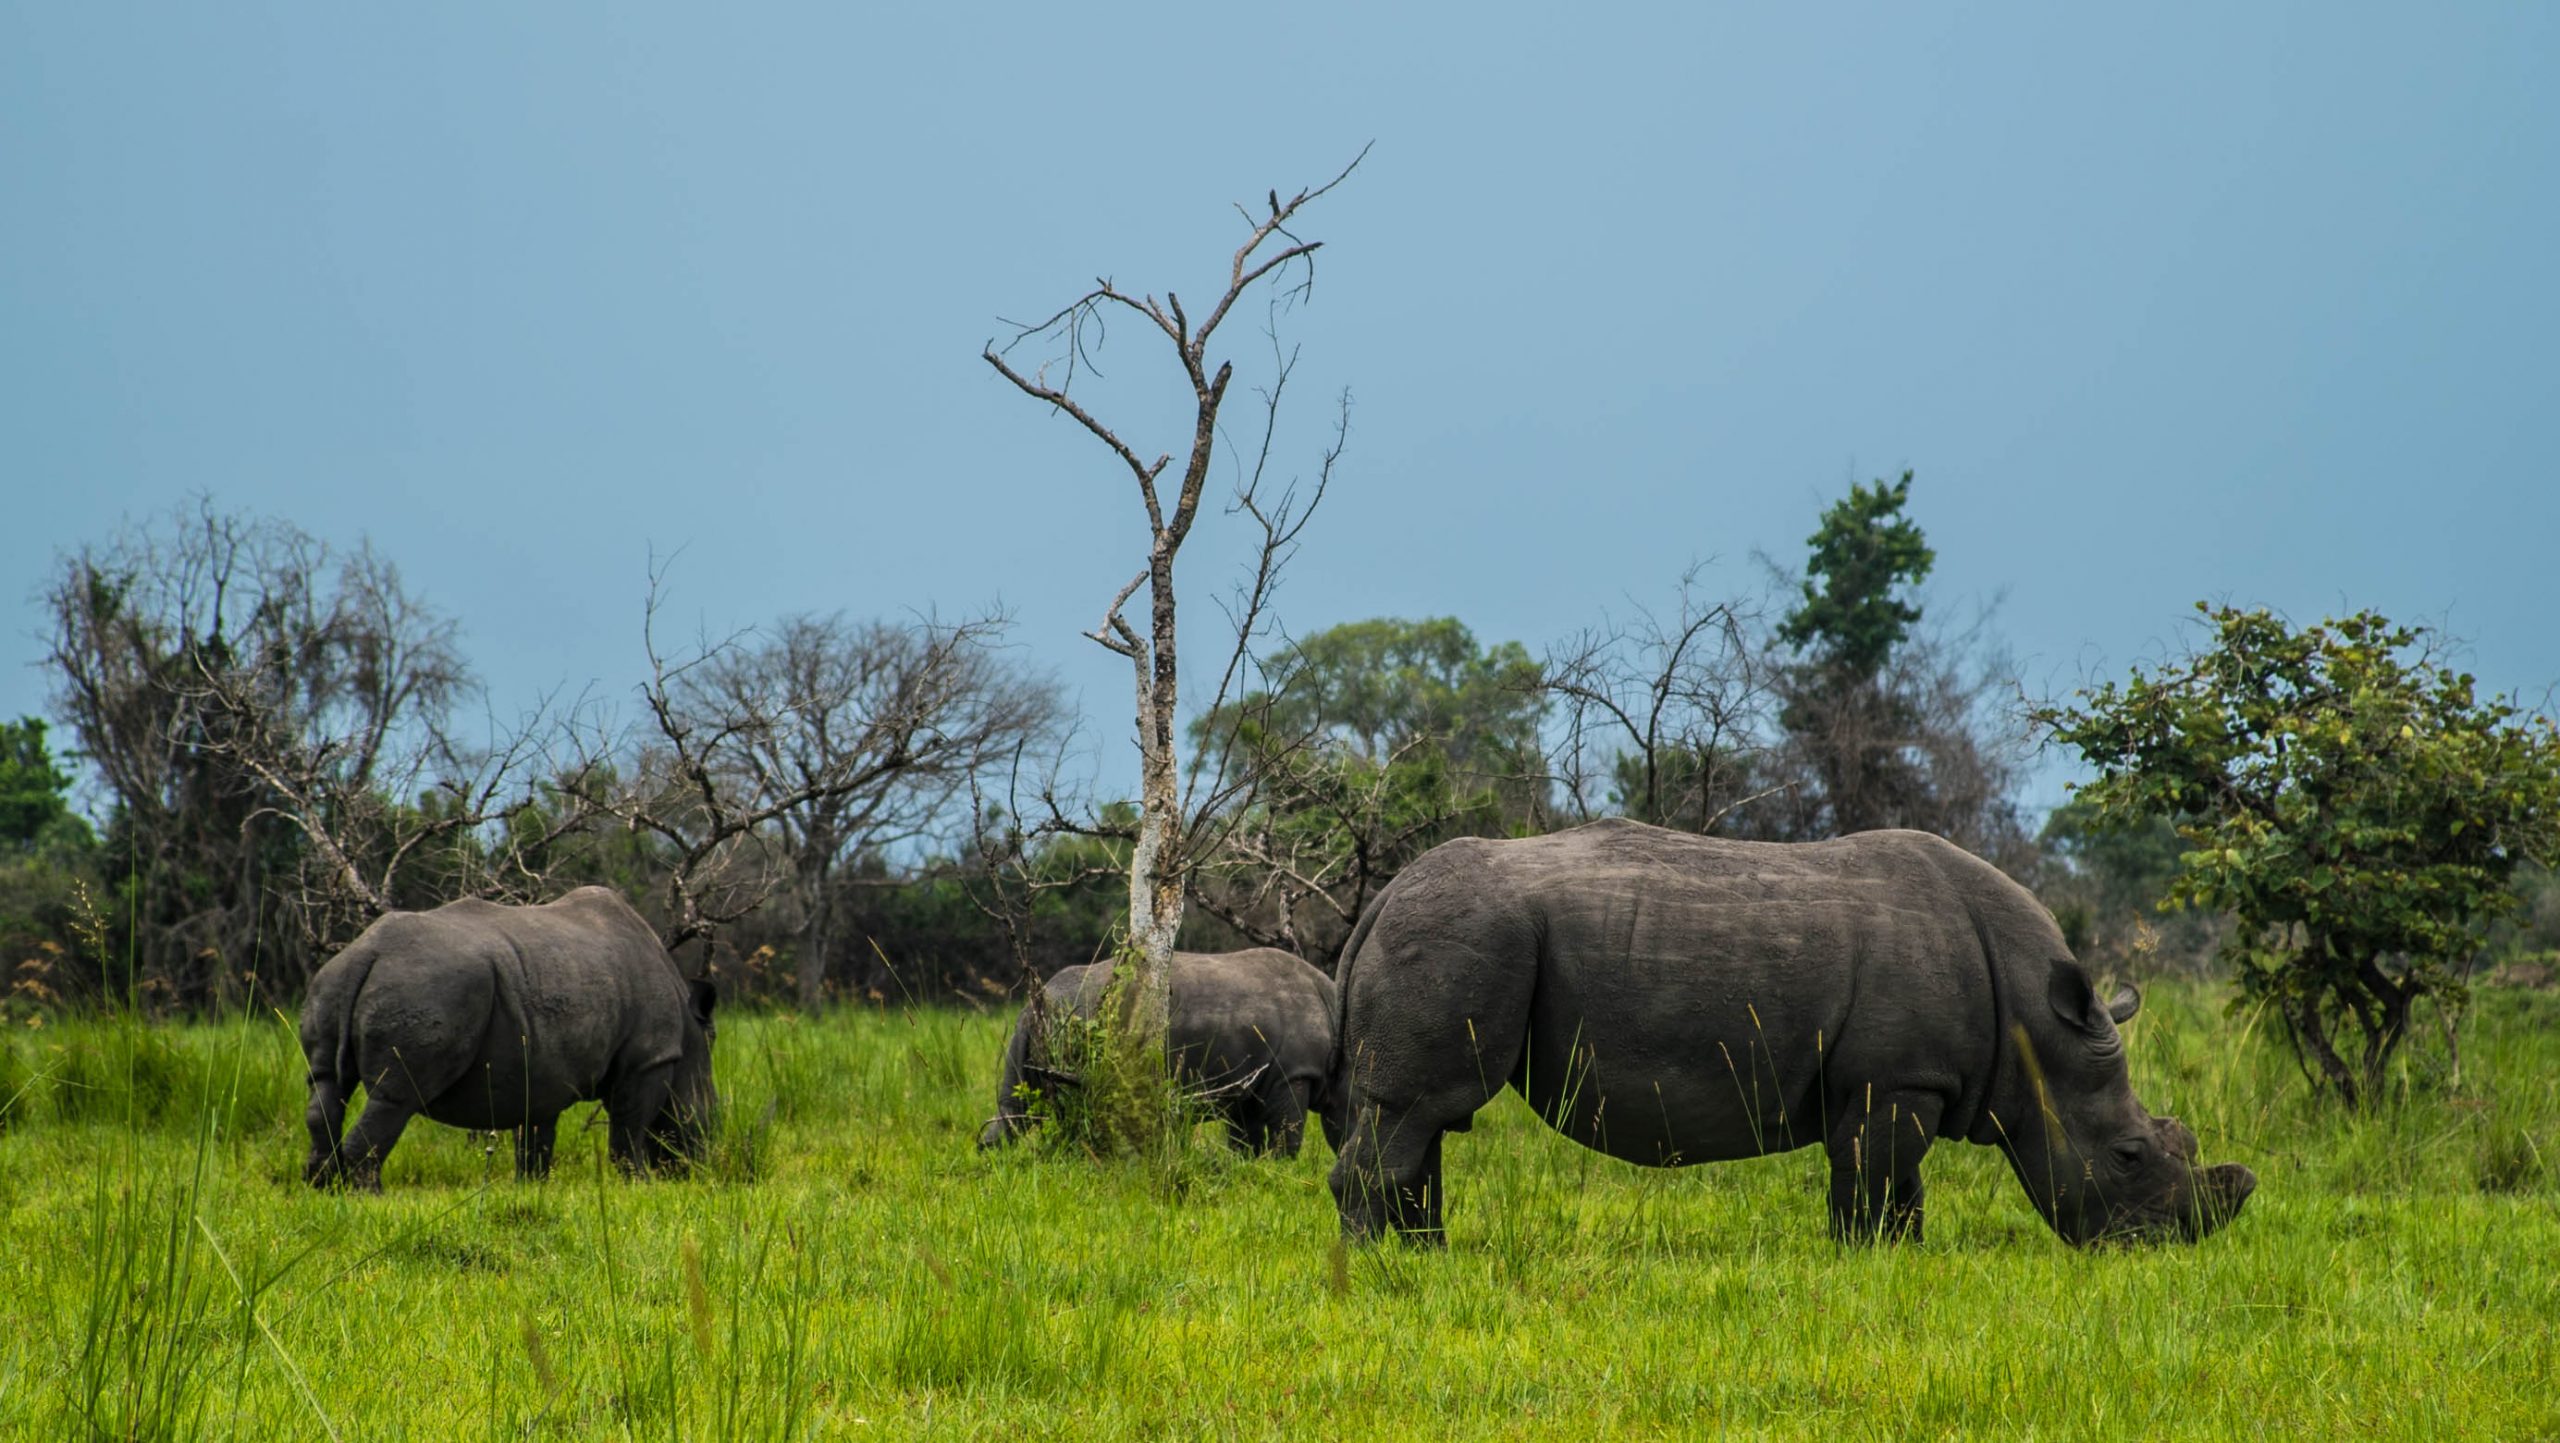 Rhino tracking in Ziwa Rhino Sanctuary Uganda